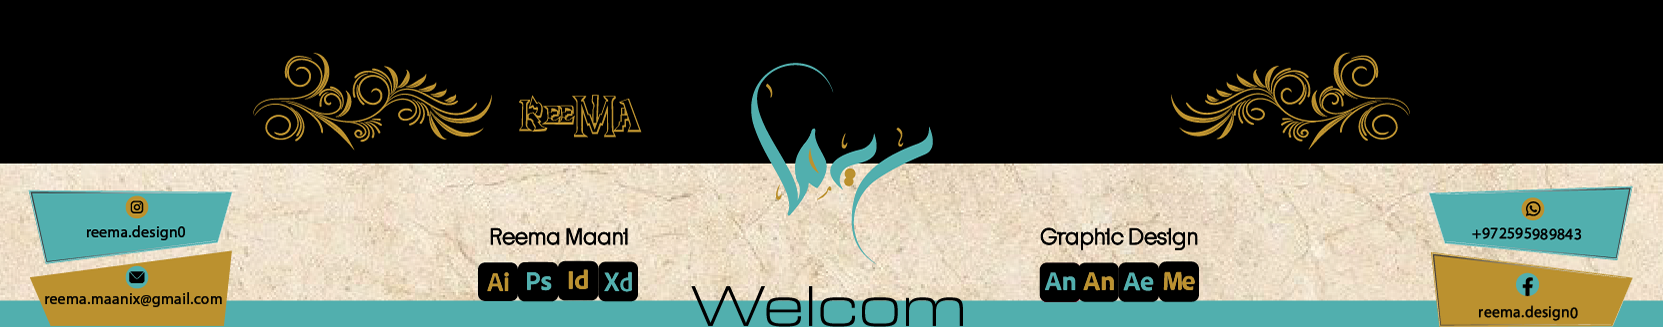 Banner profilu uživatele Reema Maani